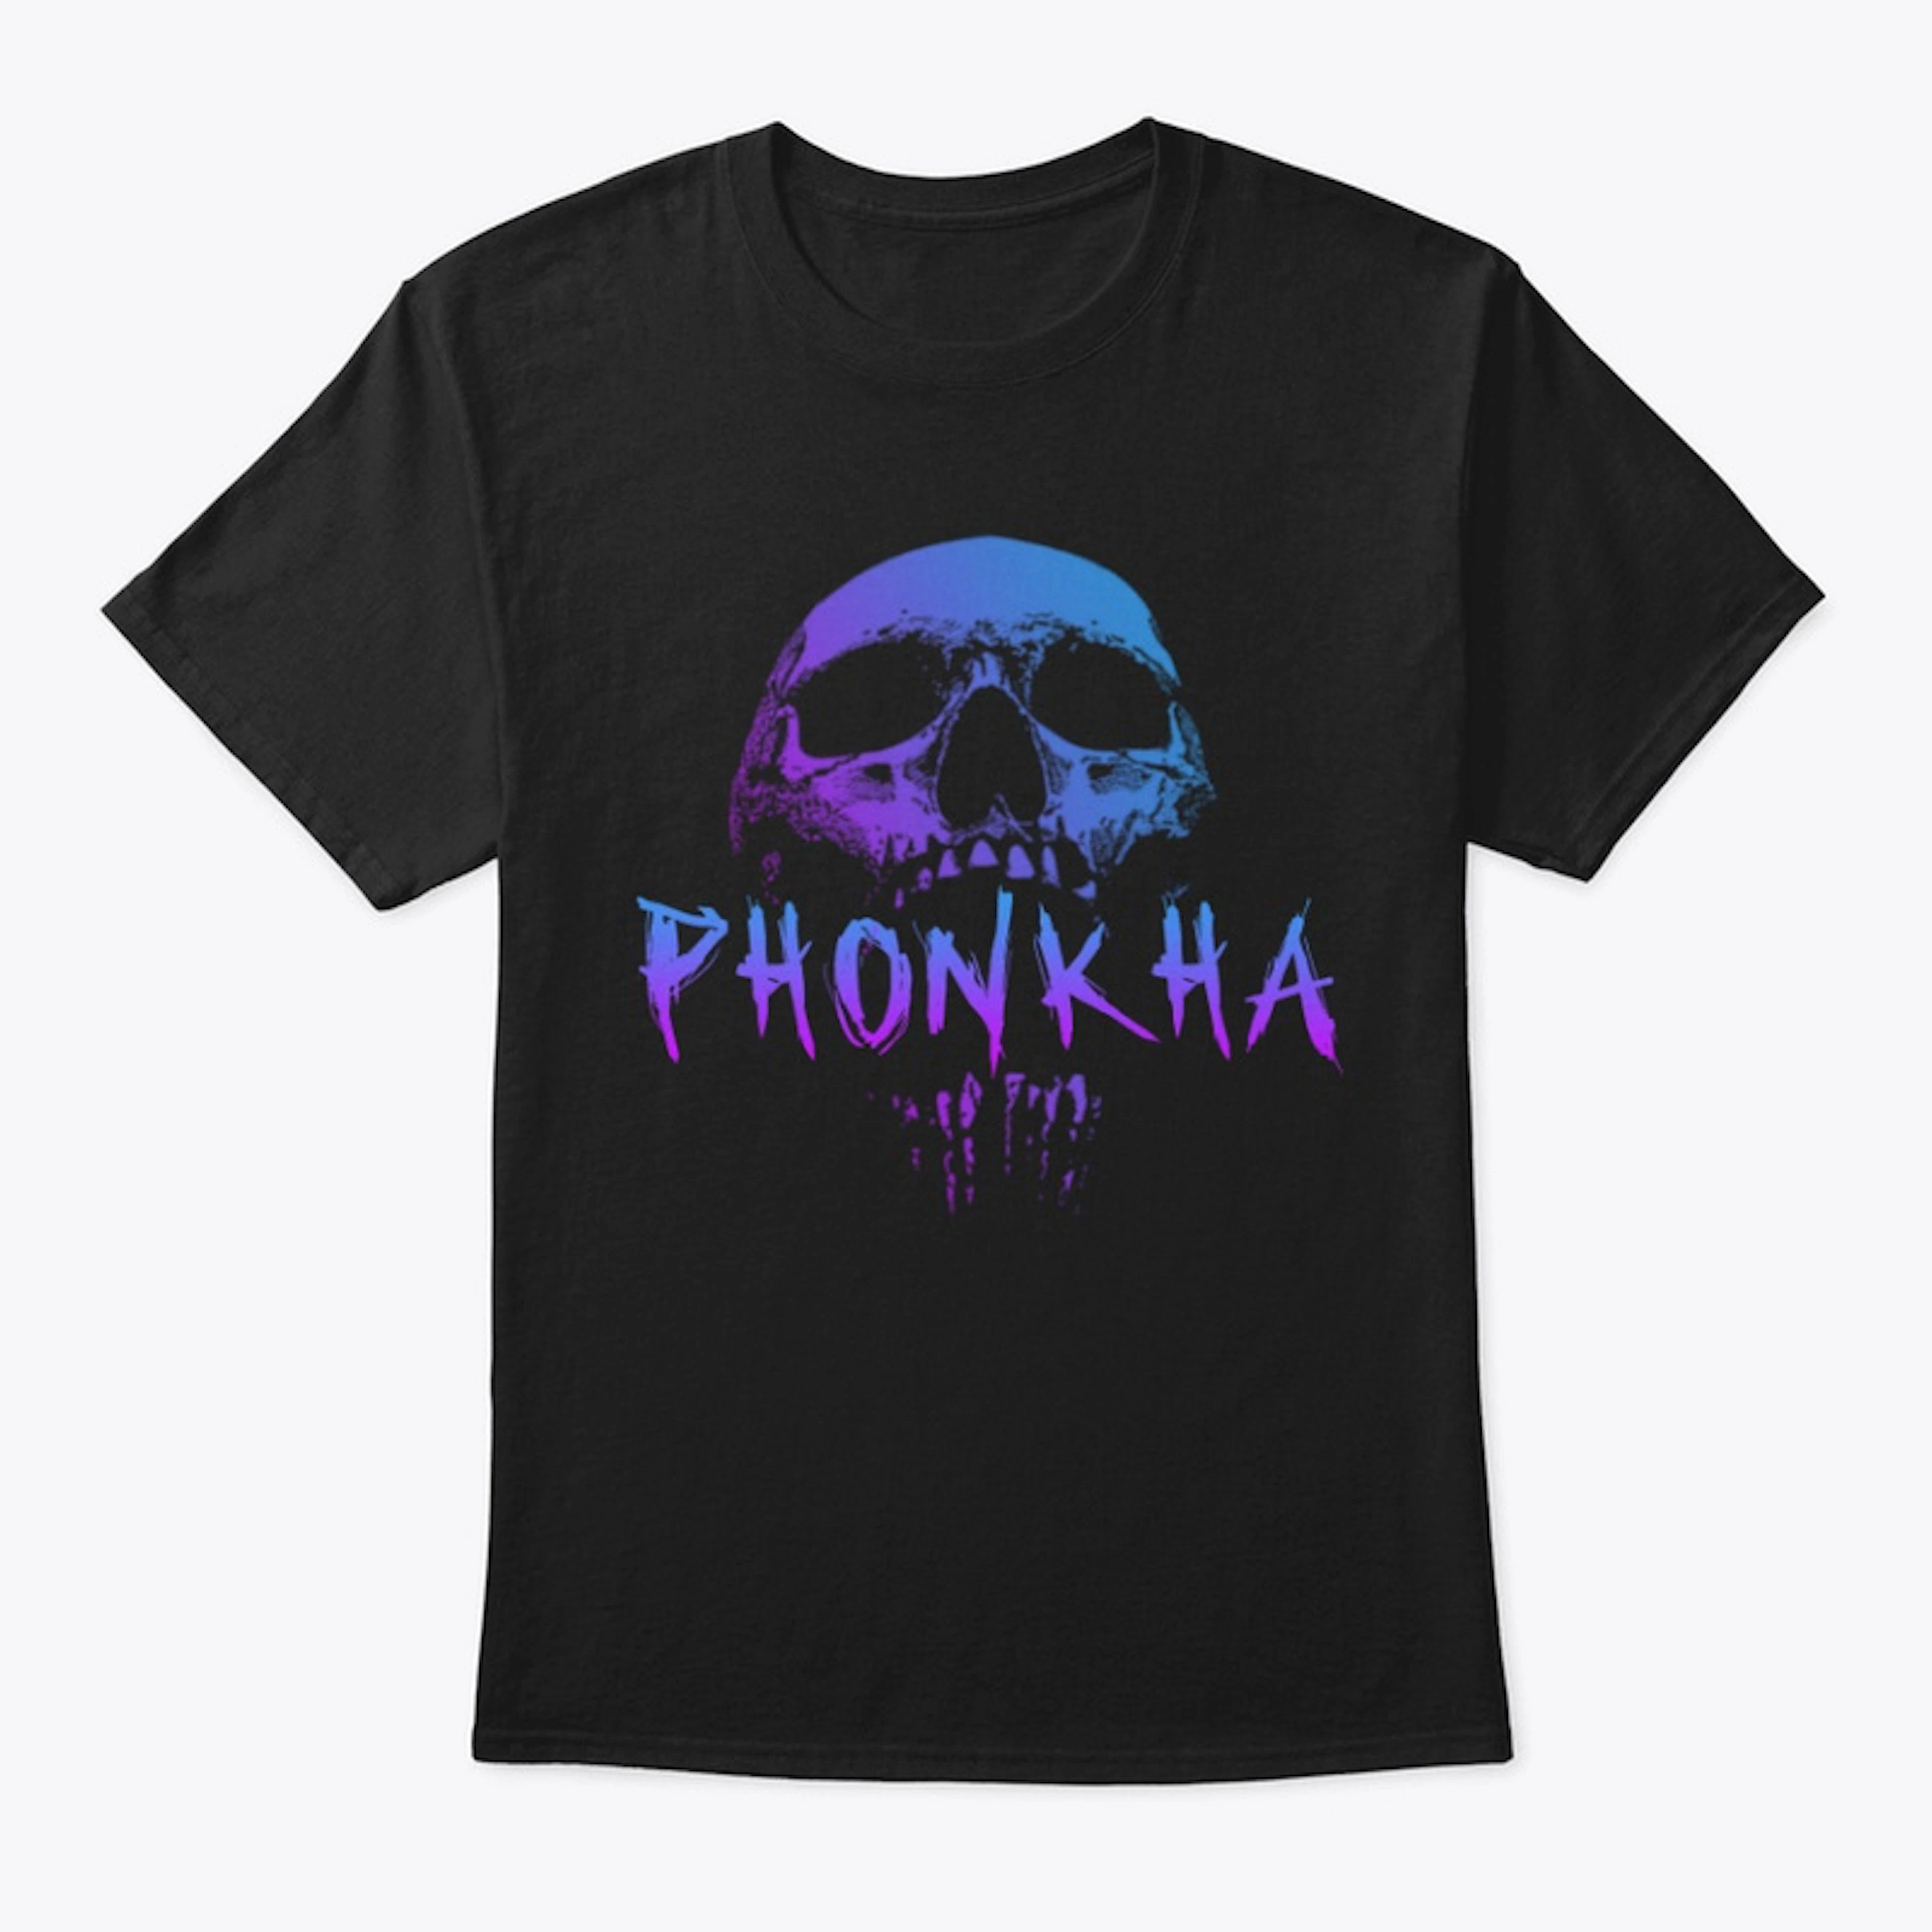 SKULL Phonkha Tshirt